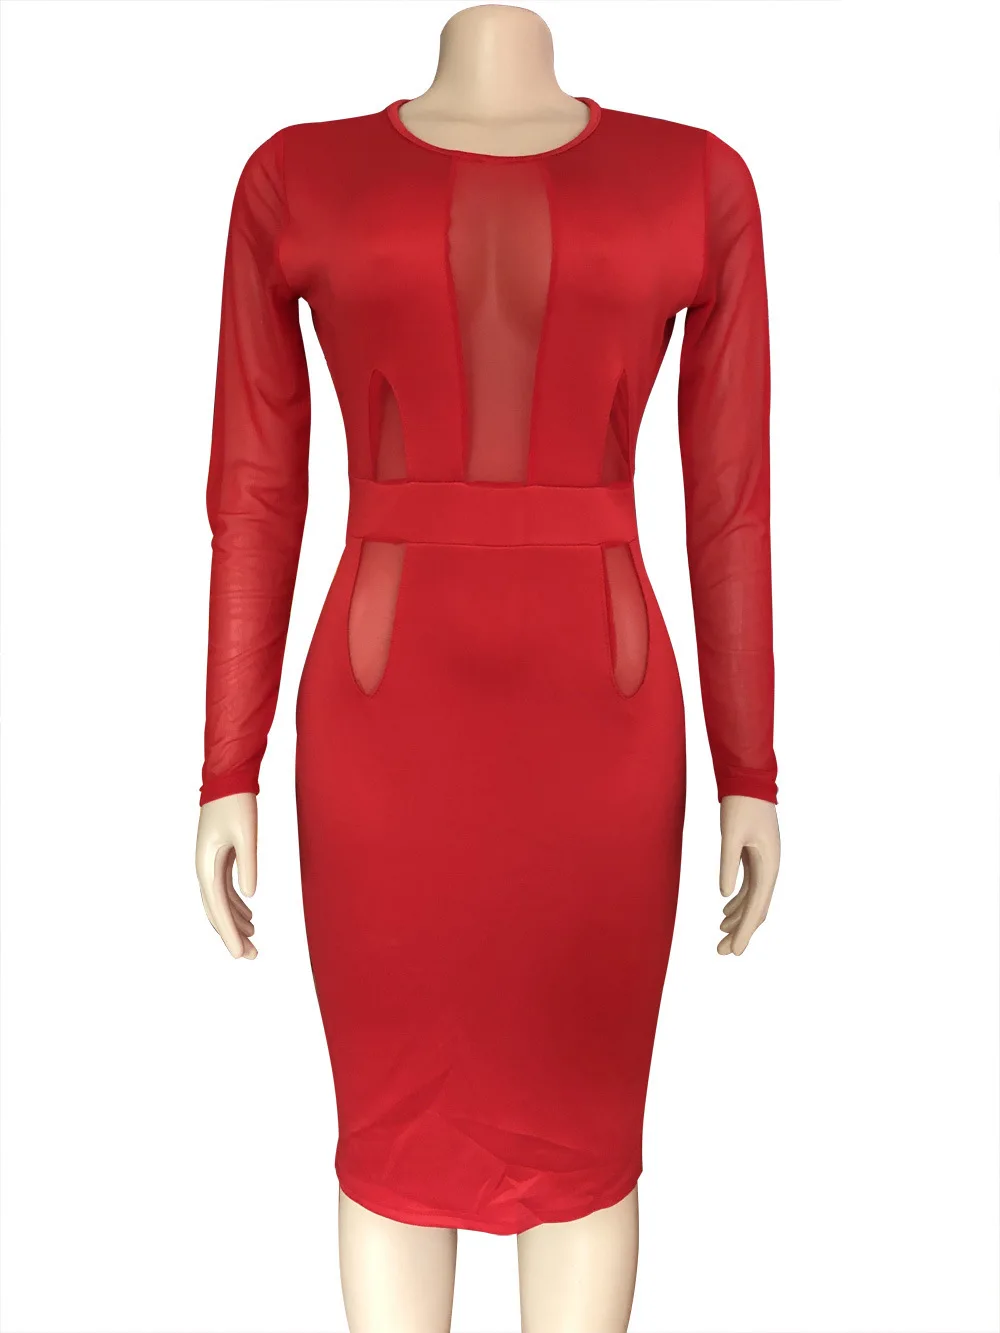 Сексуальные сетчатые коктейльные платья Новая мода бандажные облегающие вечерние платья Bpencil Robe De Soiree - Цвет: red